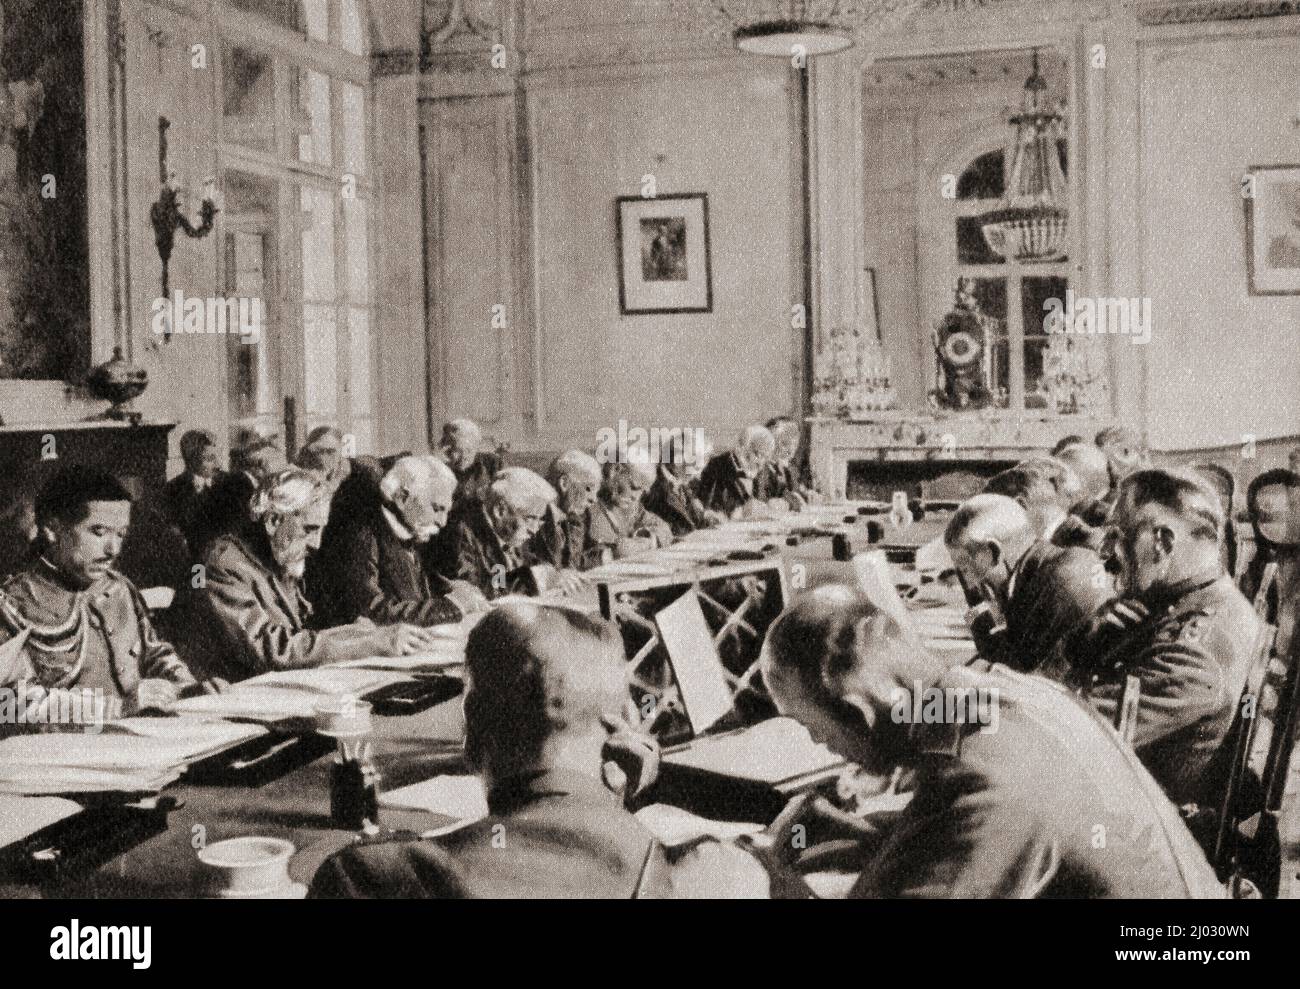 Firma del Trattato di pace di Versailles, 28 giugno 1919, Reggia di Versailles, Parigi, Francia. Questo trattato tra la Germania e le forze alleate ha posto fine alla prima guerra mondiale. Dal Paese delle meraviglie della conoscenza, pubblicato c.1930 Foto Stock